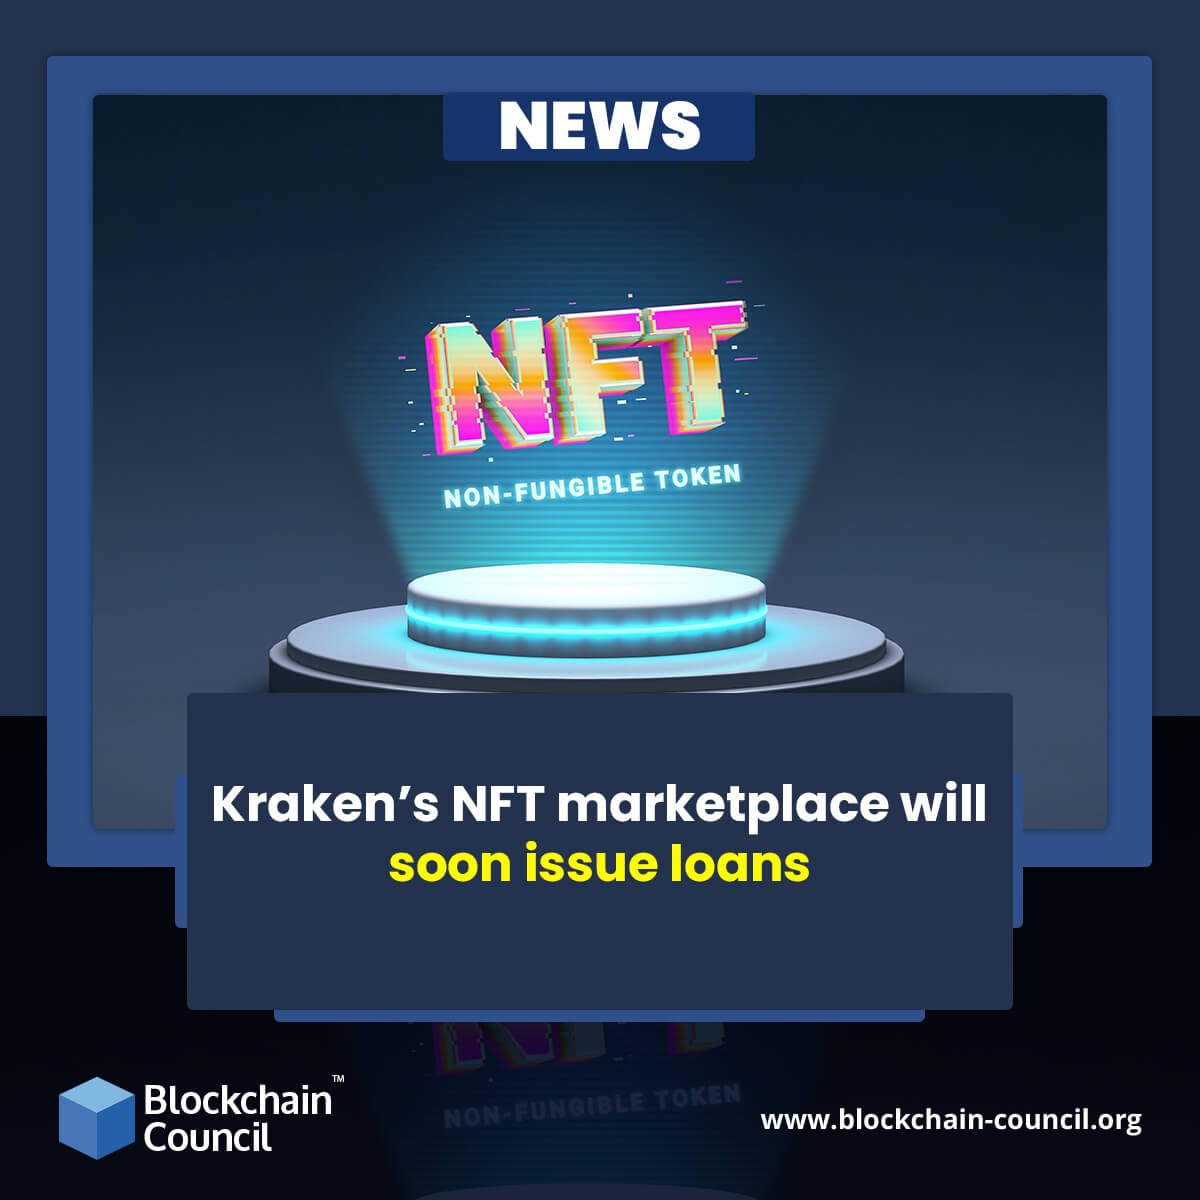 Kraken’s NFT marketplace will soon issue loans